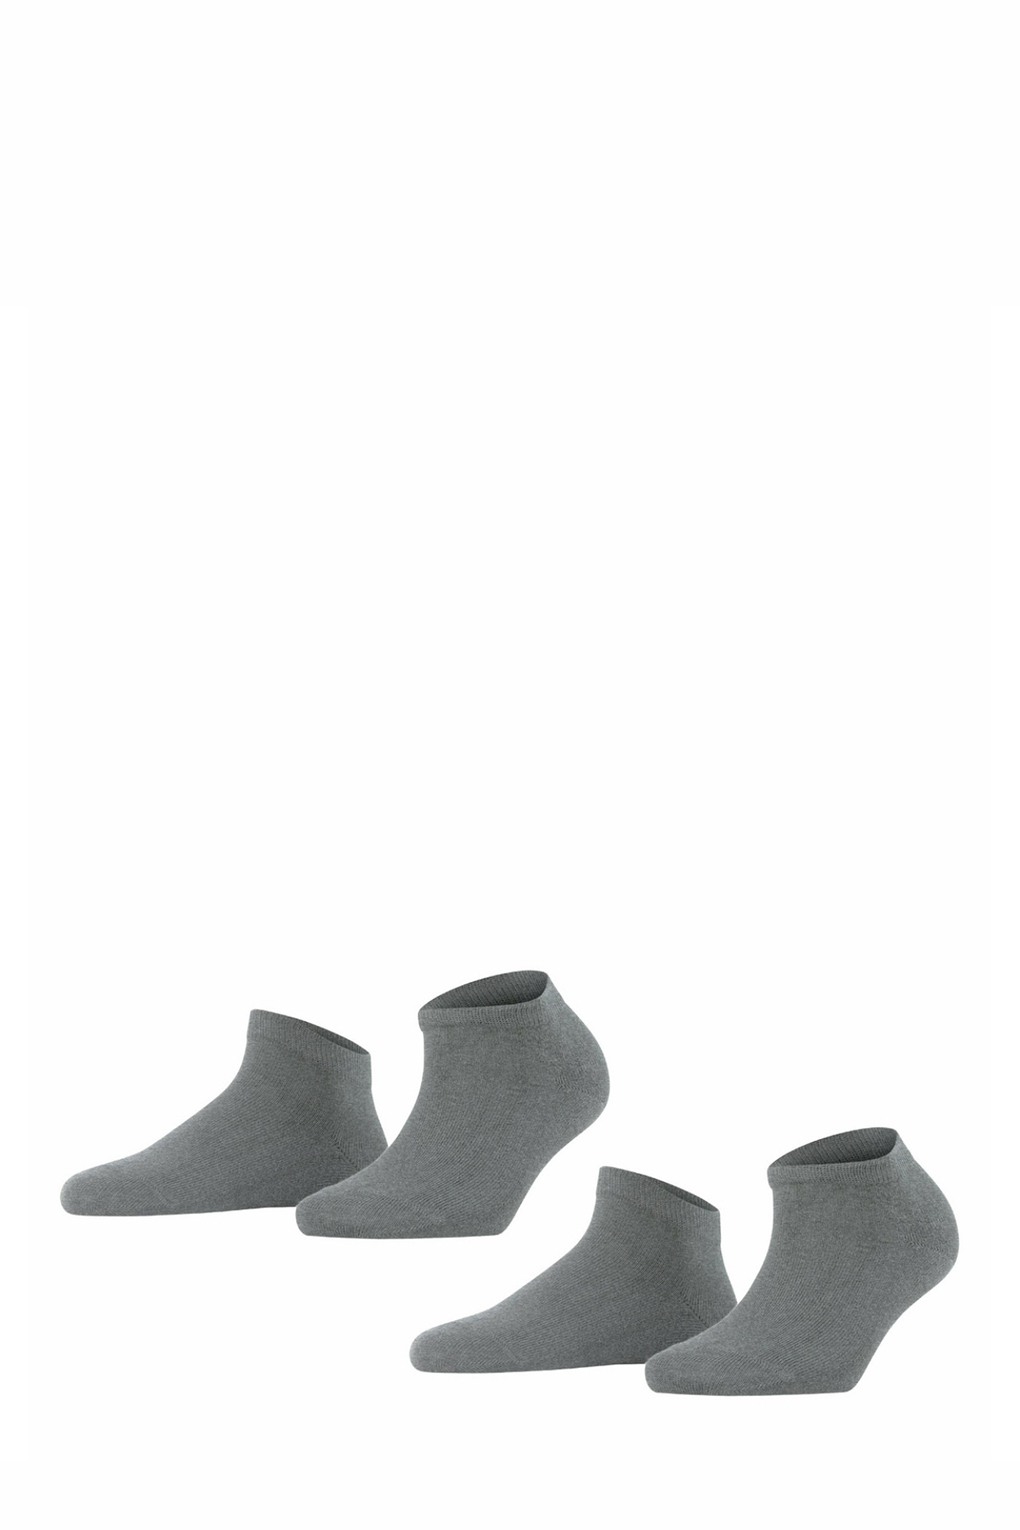 Комплект носков женских FALKE 46418 серых 35-38